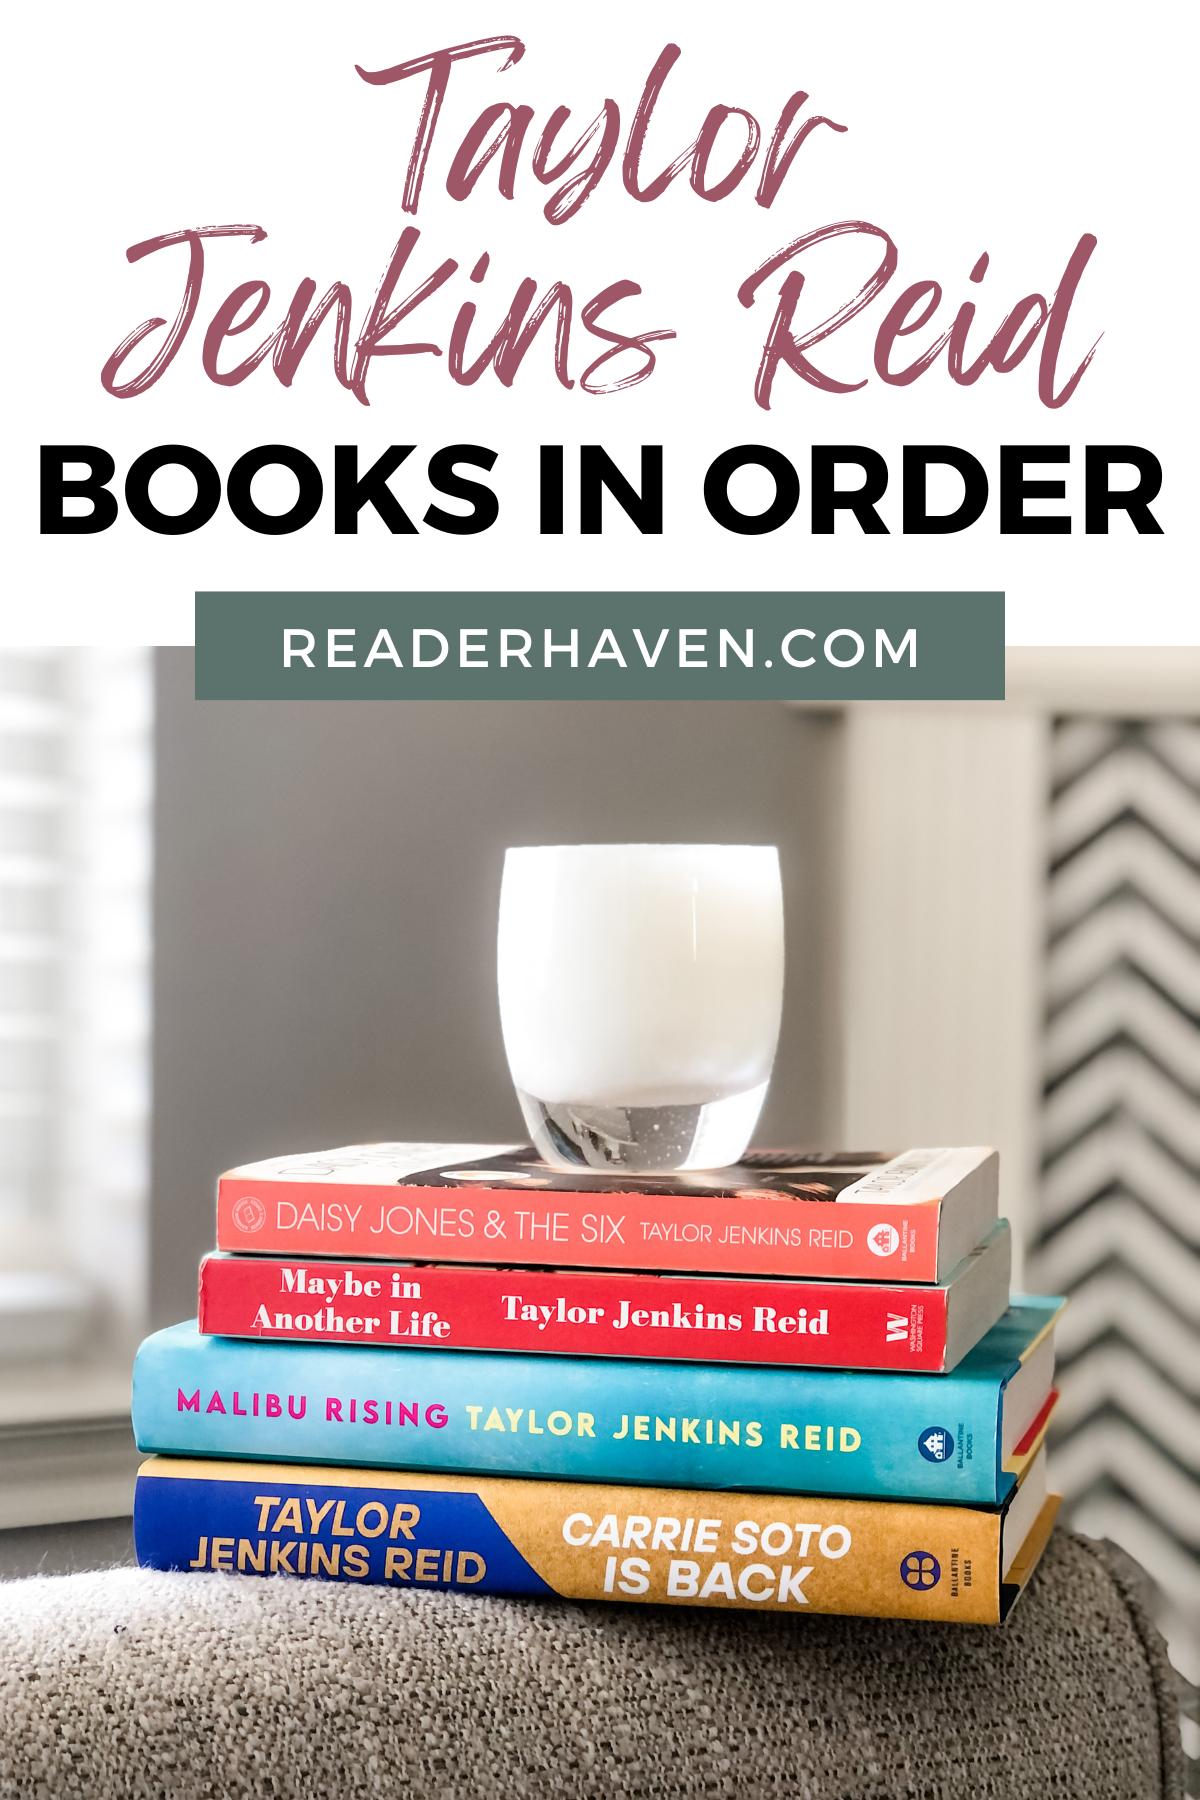 Taylor Jenkins Reid books in order